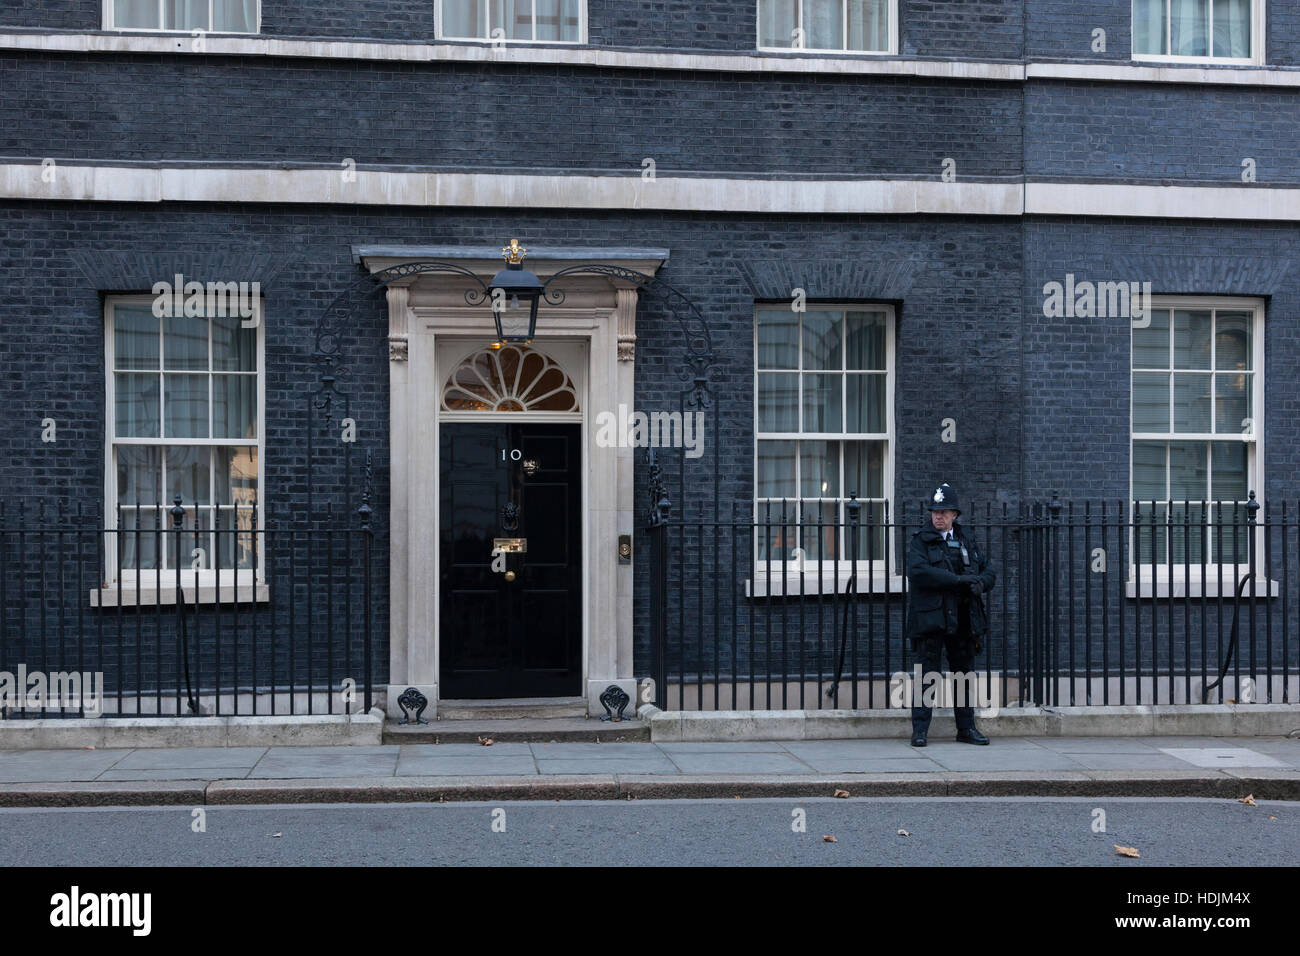 Londra, 28 novembre 2016. Una protezione nella parte anteriore del 10 Downing Street a Londra, la residenza del Primo Ministro del Regno Unito. Foto Stock